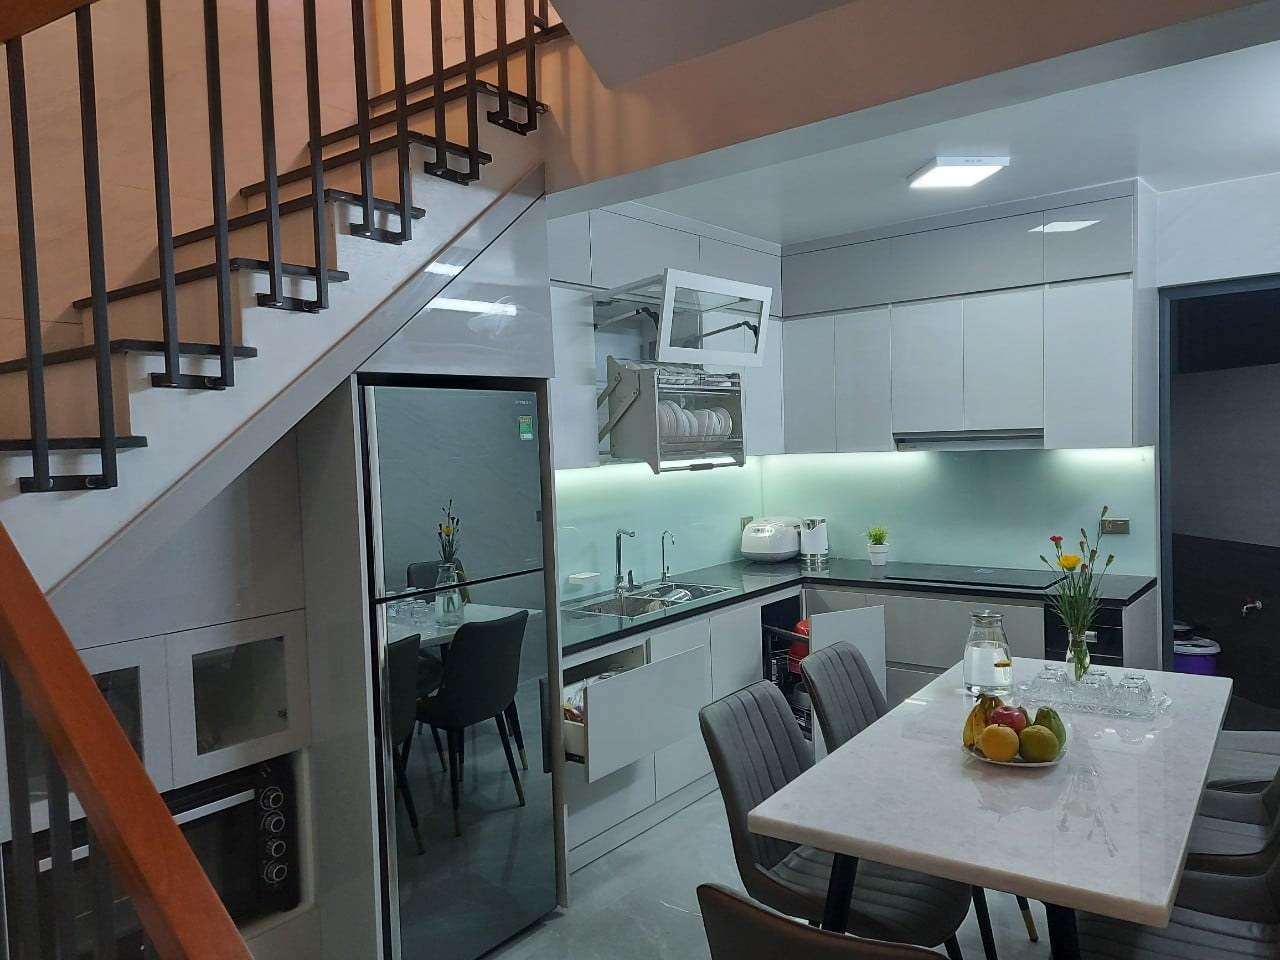 Tủ bếp dưới với bề mặt Melamine hiện đại, thiết kế hộc tủ kéo rộng rãi thuận tiện cho việc nấu nướng